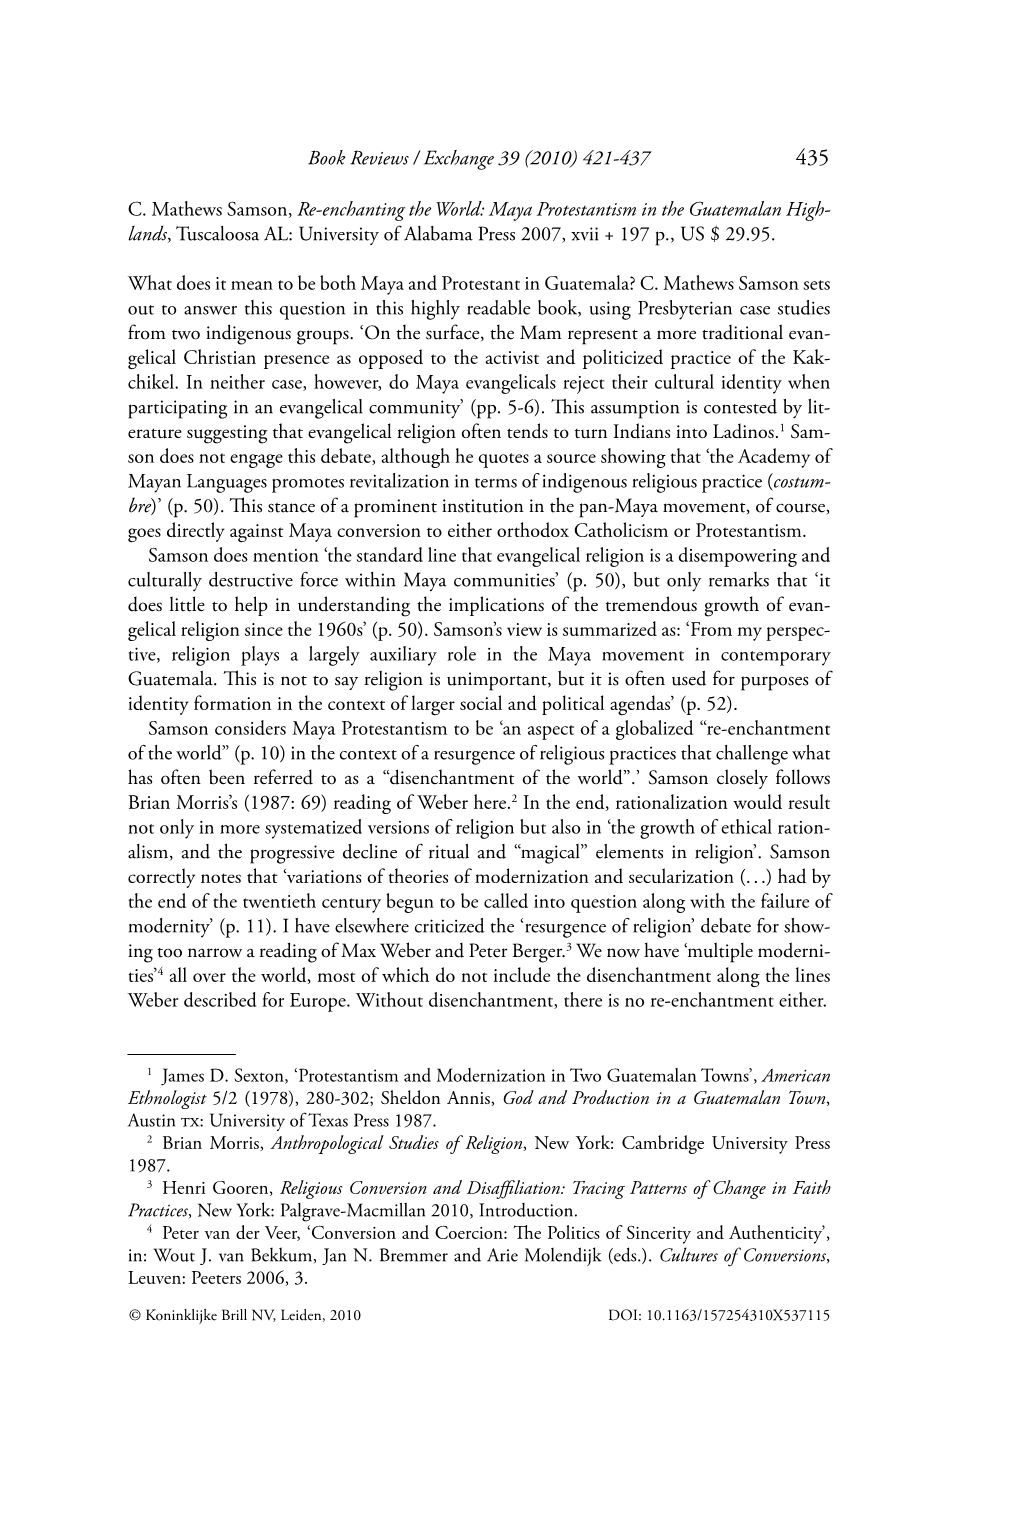 Book Reviews / Exchange 39 (2010) 421-437 C. Mathews Samson, Re-Enchanting the World: Maya Protestantism in the Guatemalan High